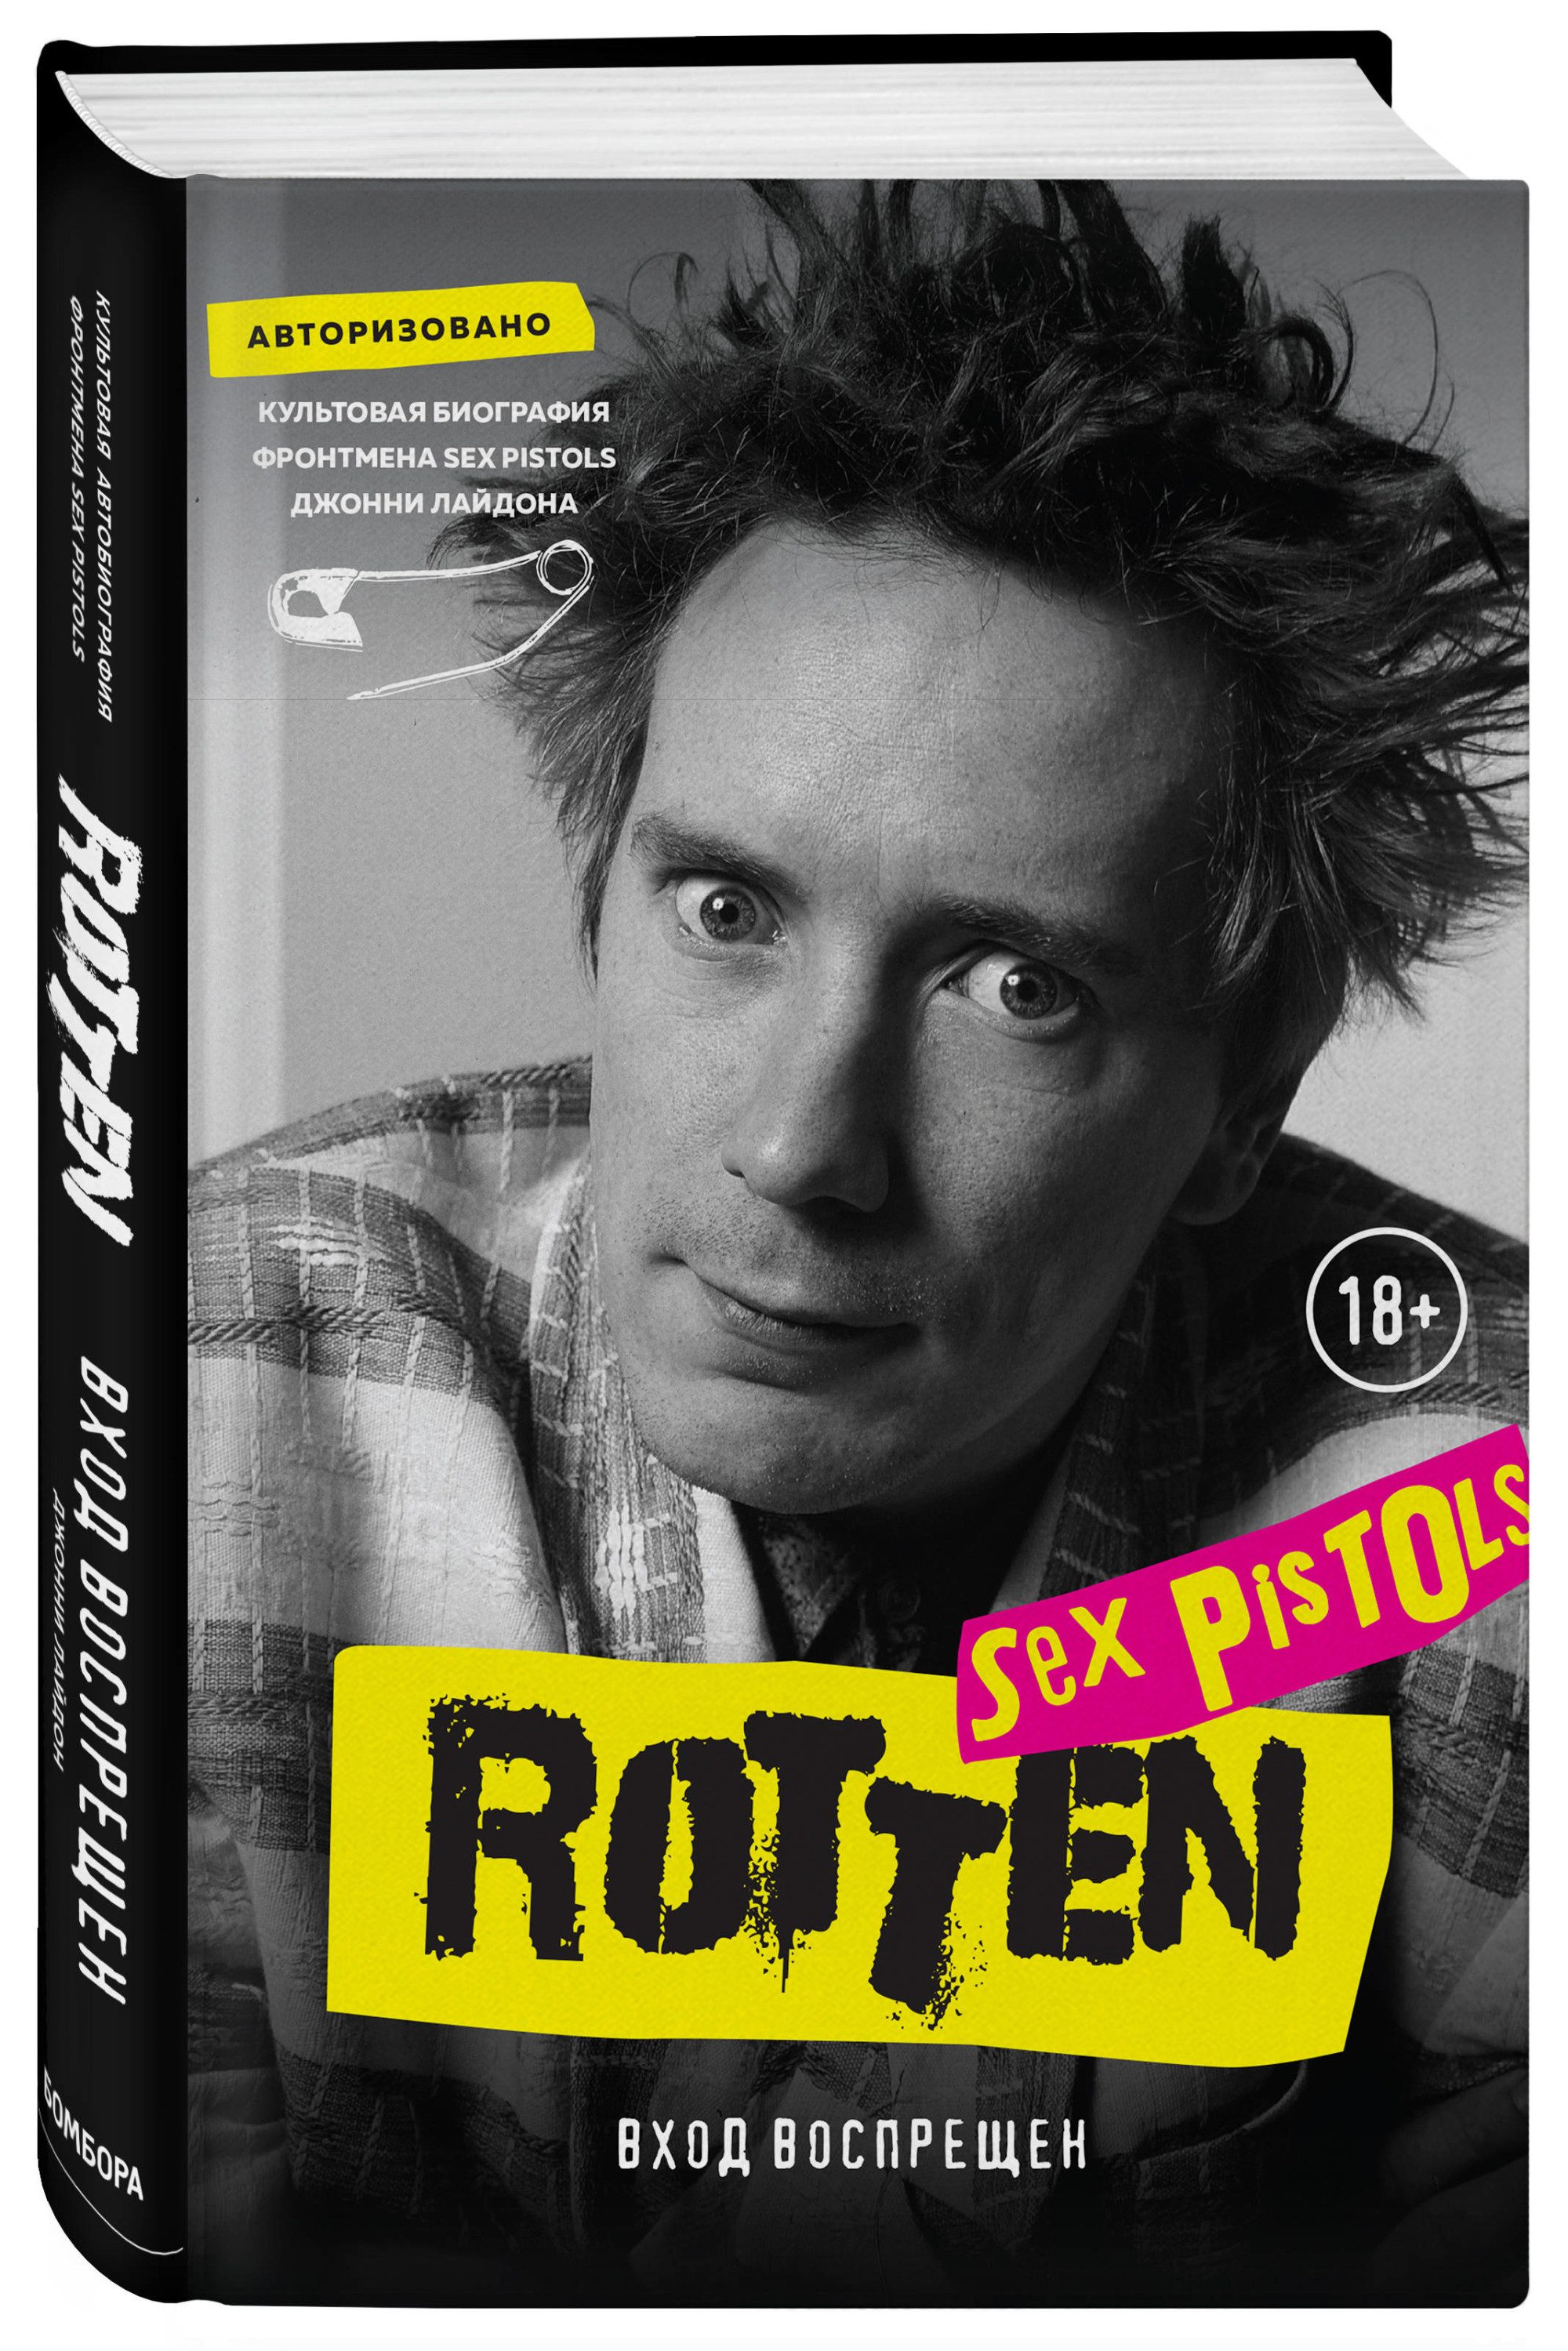 Книга Rotten Вход воспрещен Культовая биография фронтмена Sex